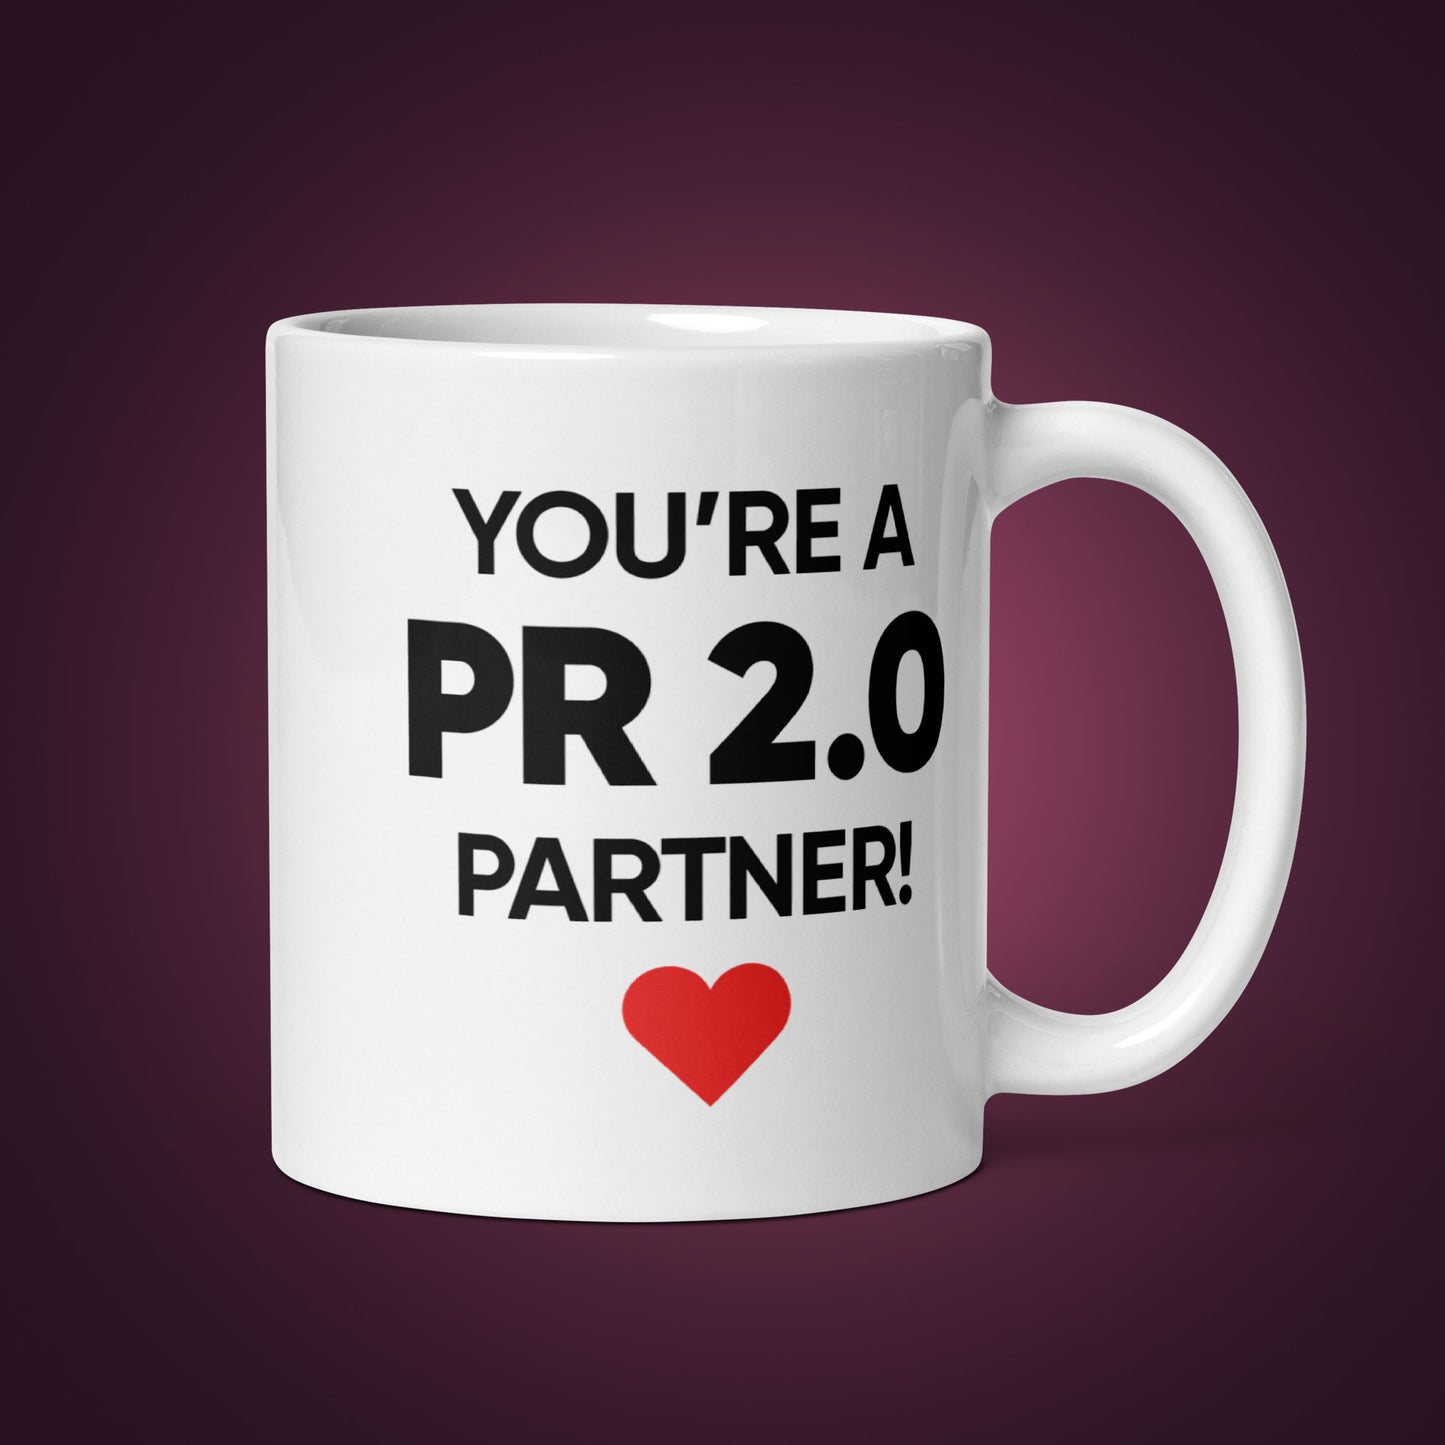 "You're a PR 2.0 Partner" Mug